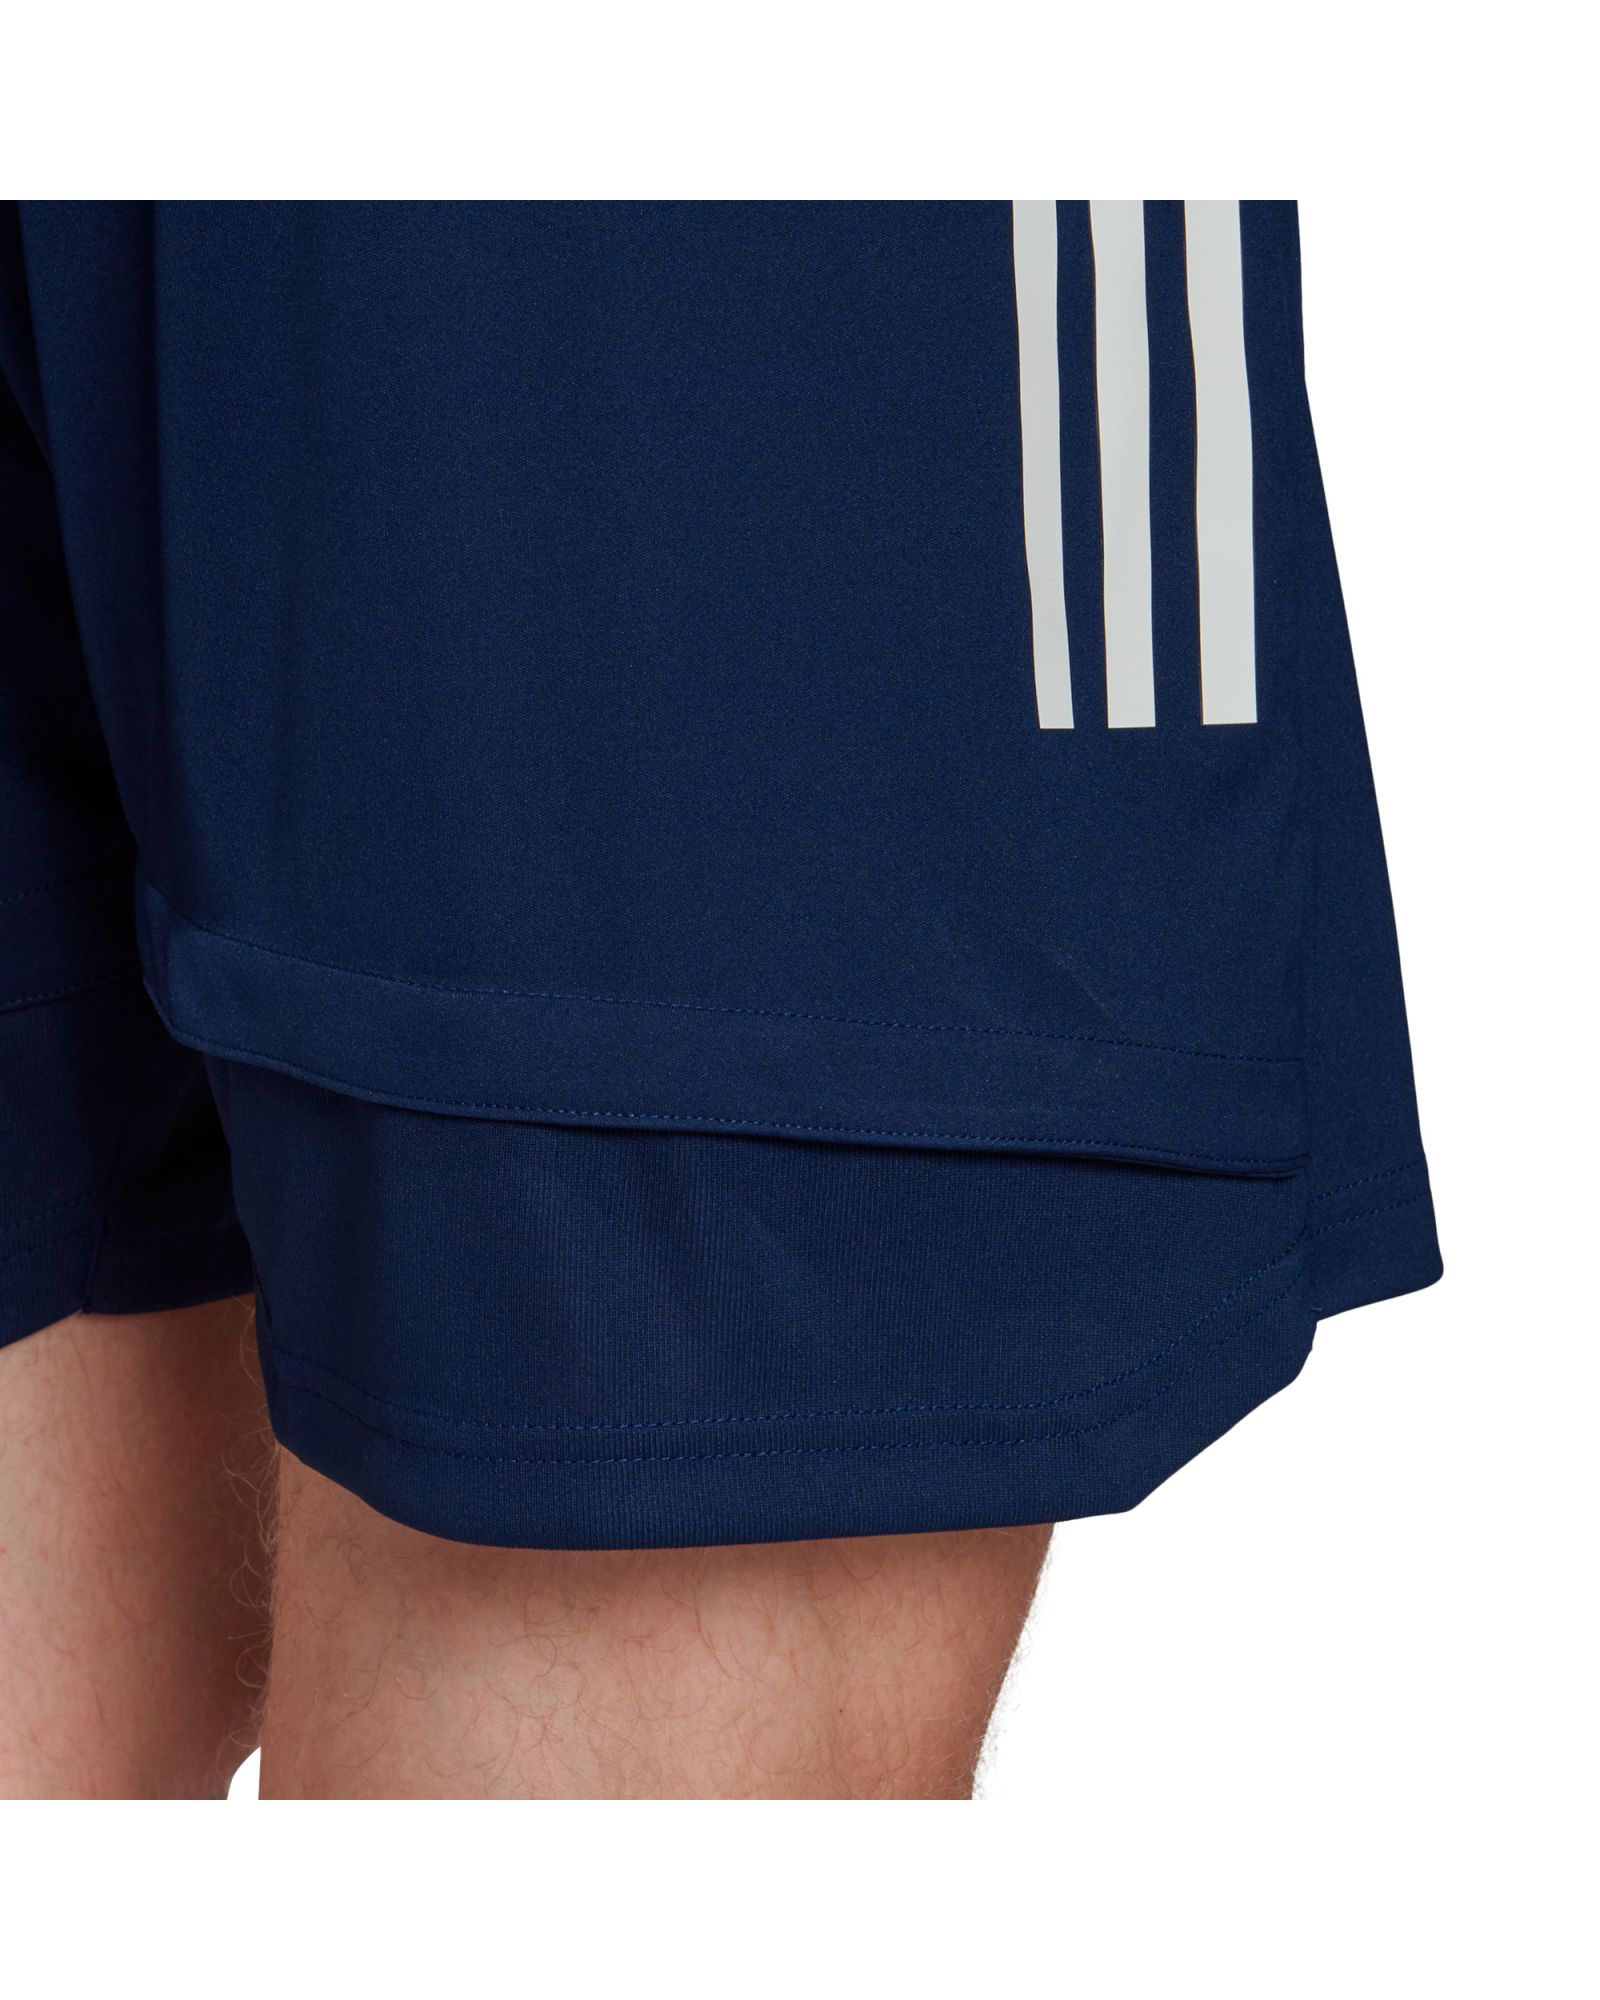 Pantalón corto de Training Condivo 20 Azul - Fútbol Factory